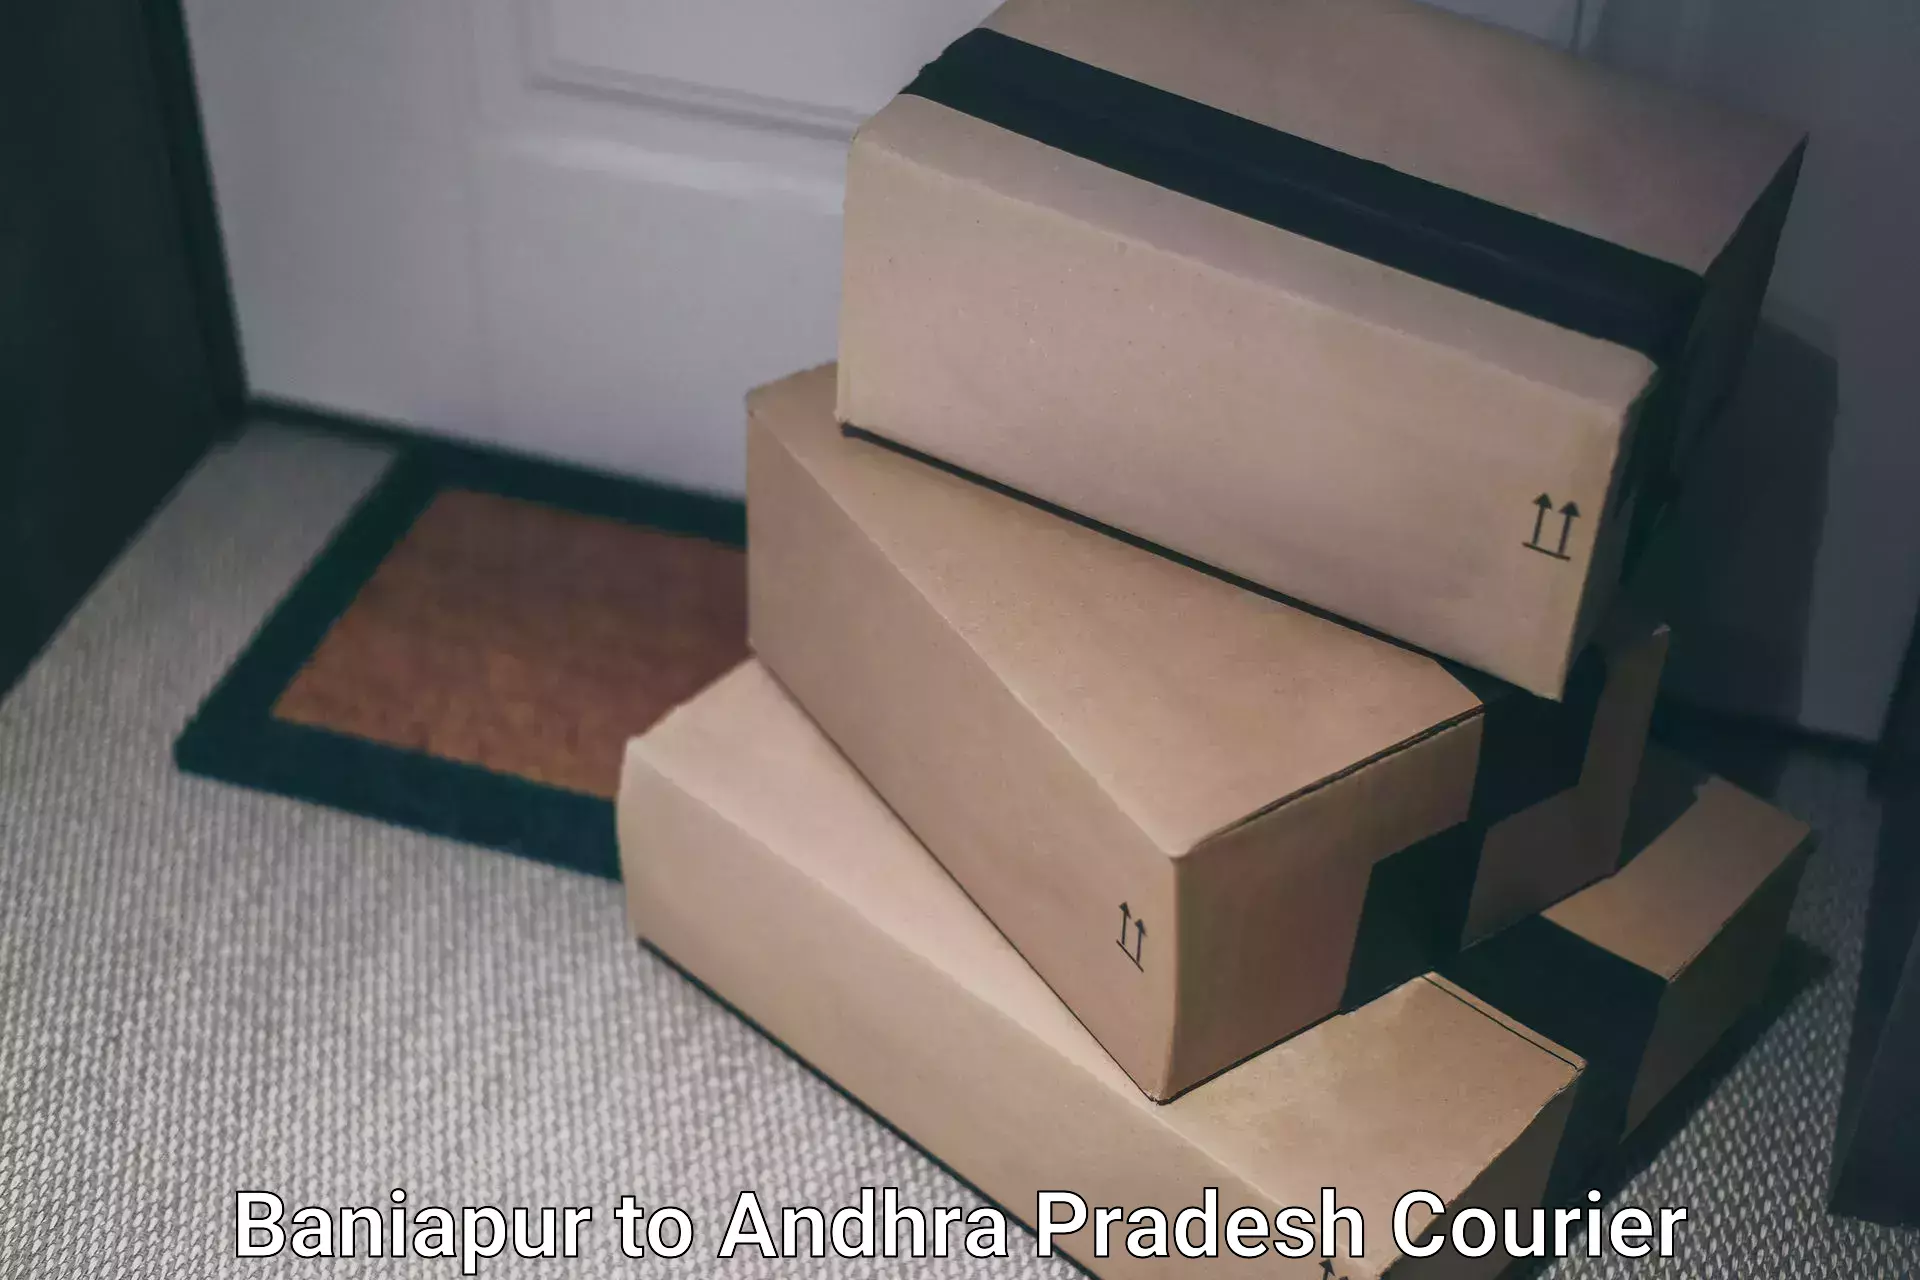 Modern courier technology Baniapur to B Kothakota